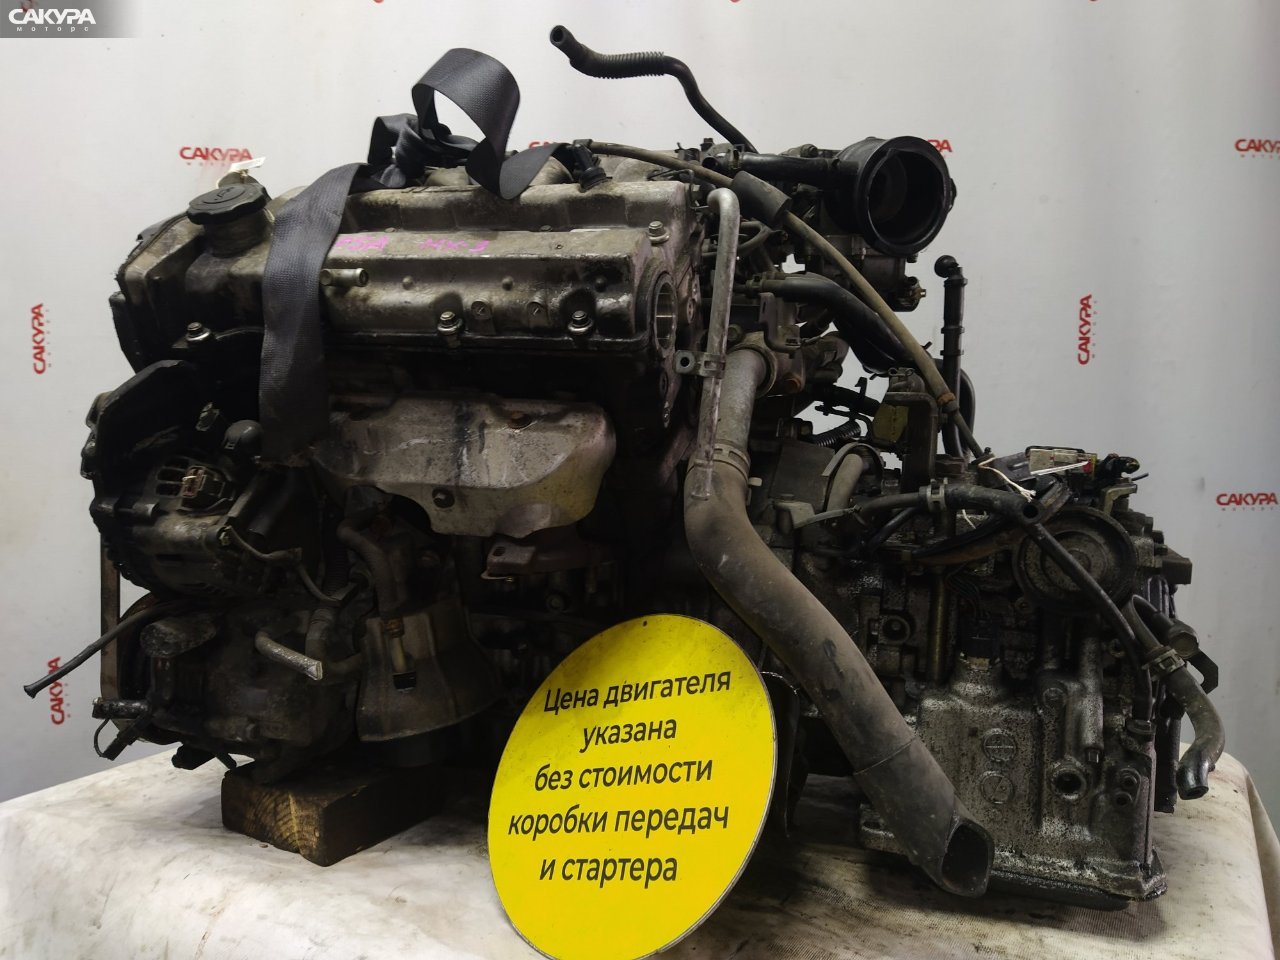 Двигатель Mazda Eunos Presso EC8SE K8: купить в Сакура Красноярск.